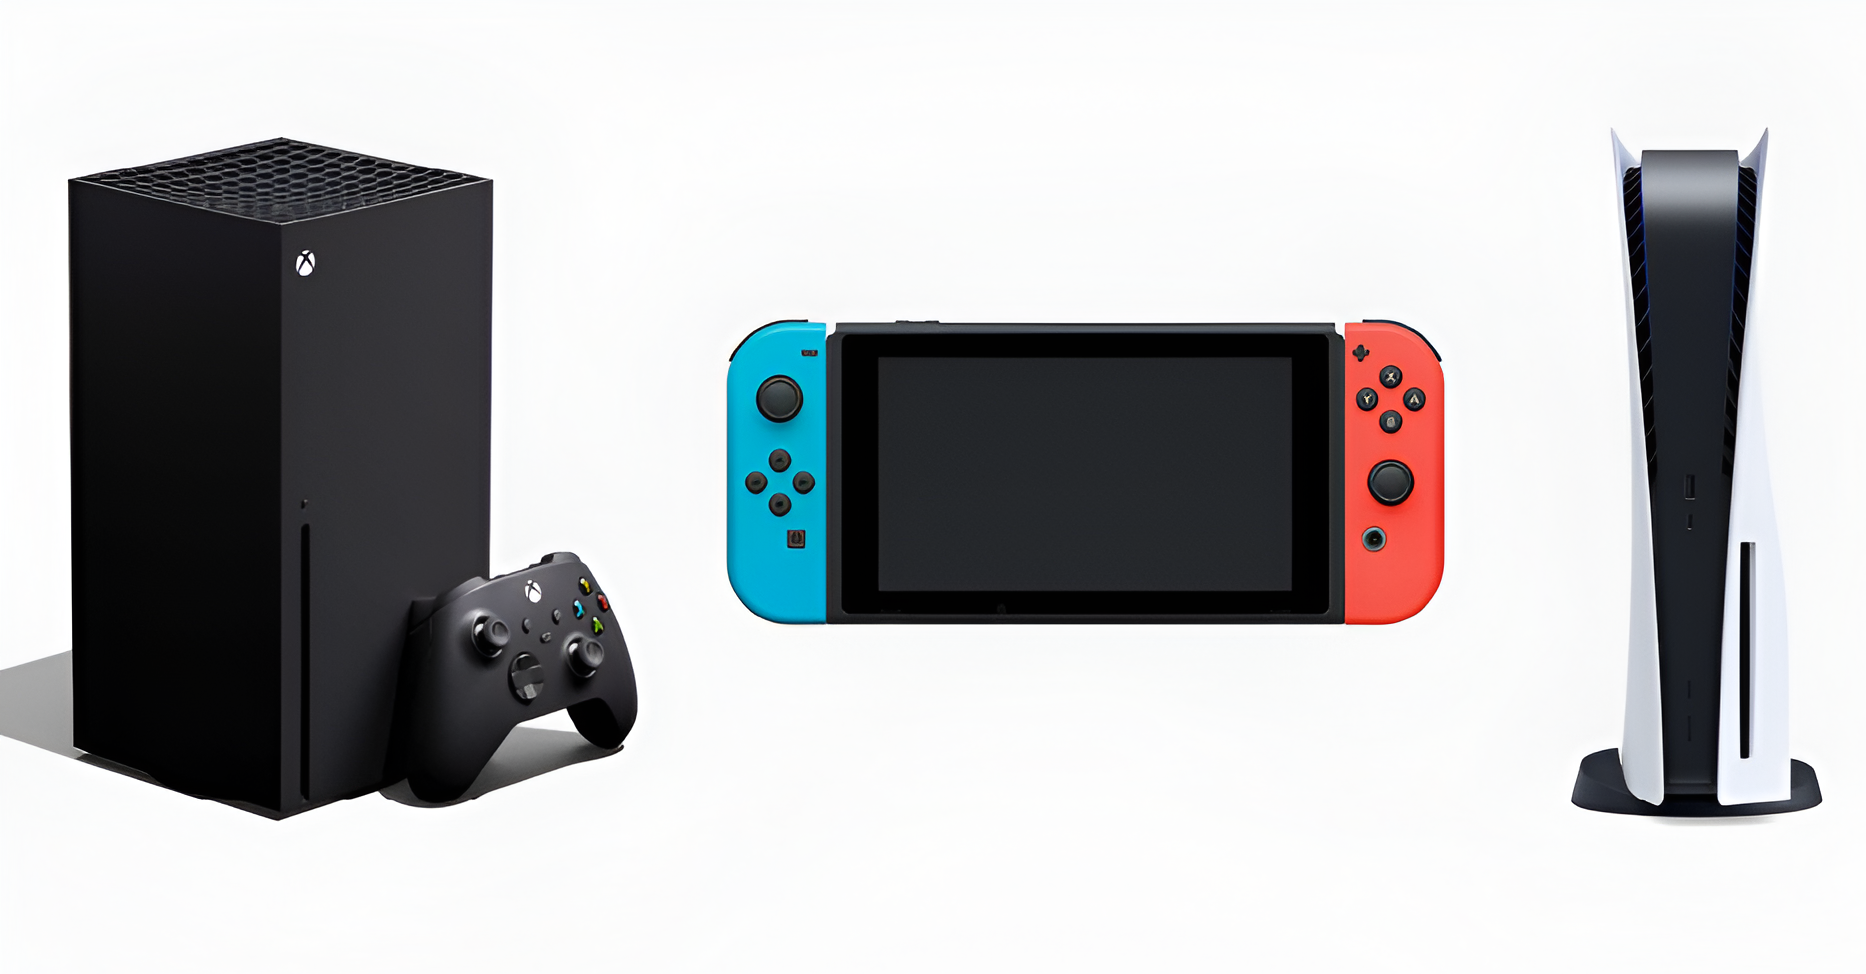 Trzy konsole do gier w rzędzie na białym tle: po lewej konsola Xbox z czarnym kontrolerem, po środku kolorowa konsola Nintendo Switch, po prawej konsola PlayStation 5 z białą obudową.